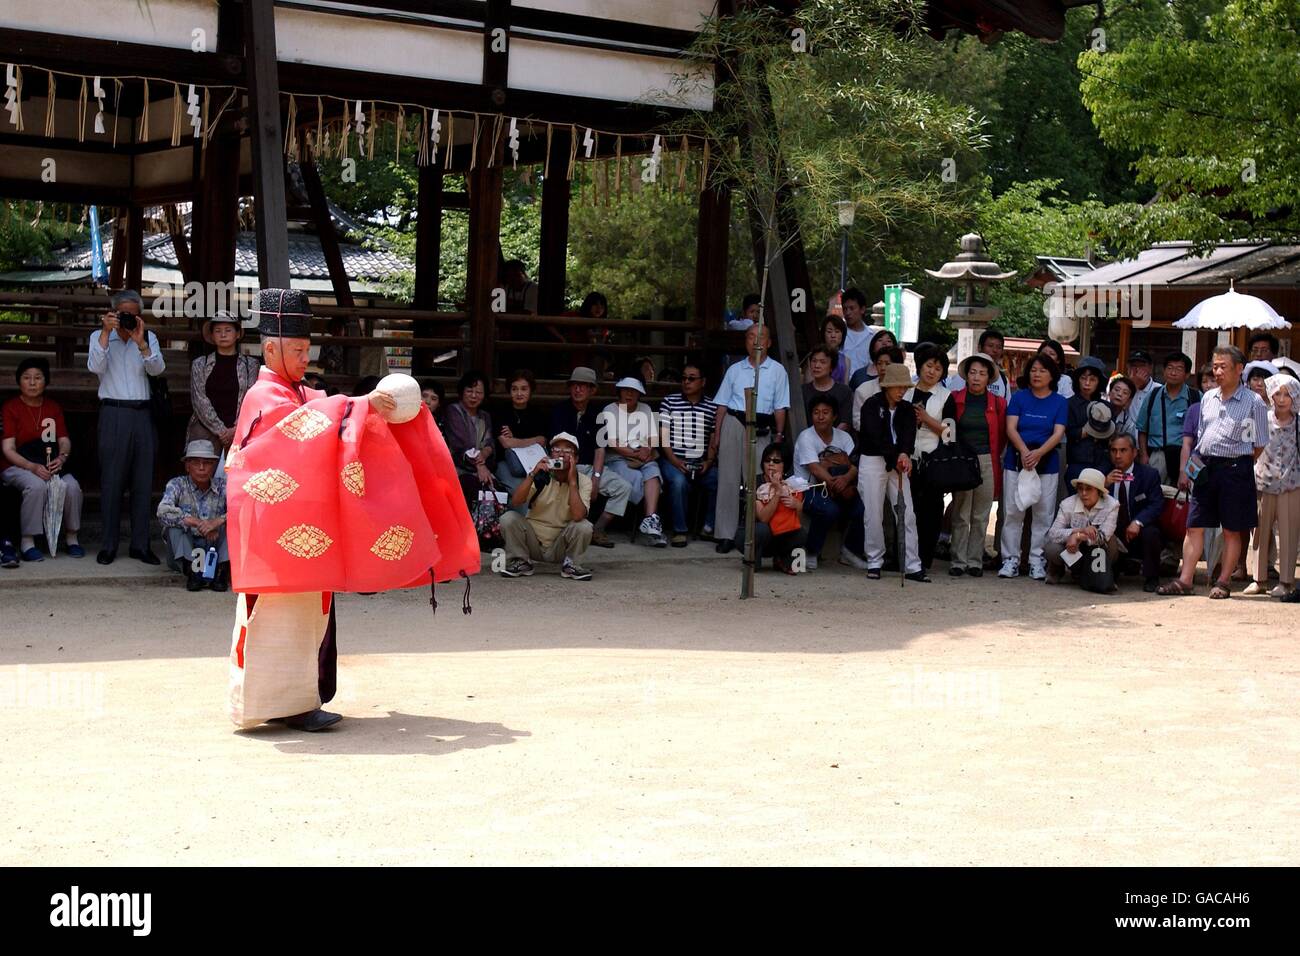 Fußball - FIFA Fußball-Weltmeisterschaft 2002 - Kemari in Koyoto, Japan. Ein Spieler von Kemari, einer alten Form des Fußballs, der vor über 1400 Jahren aus China eingeführt wurde Stockfoto